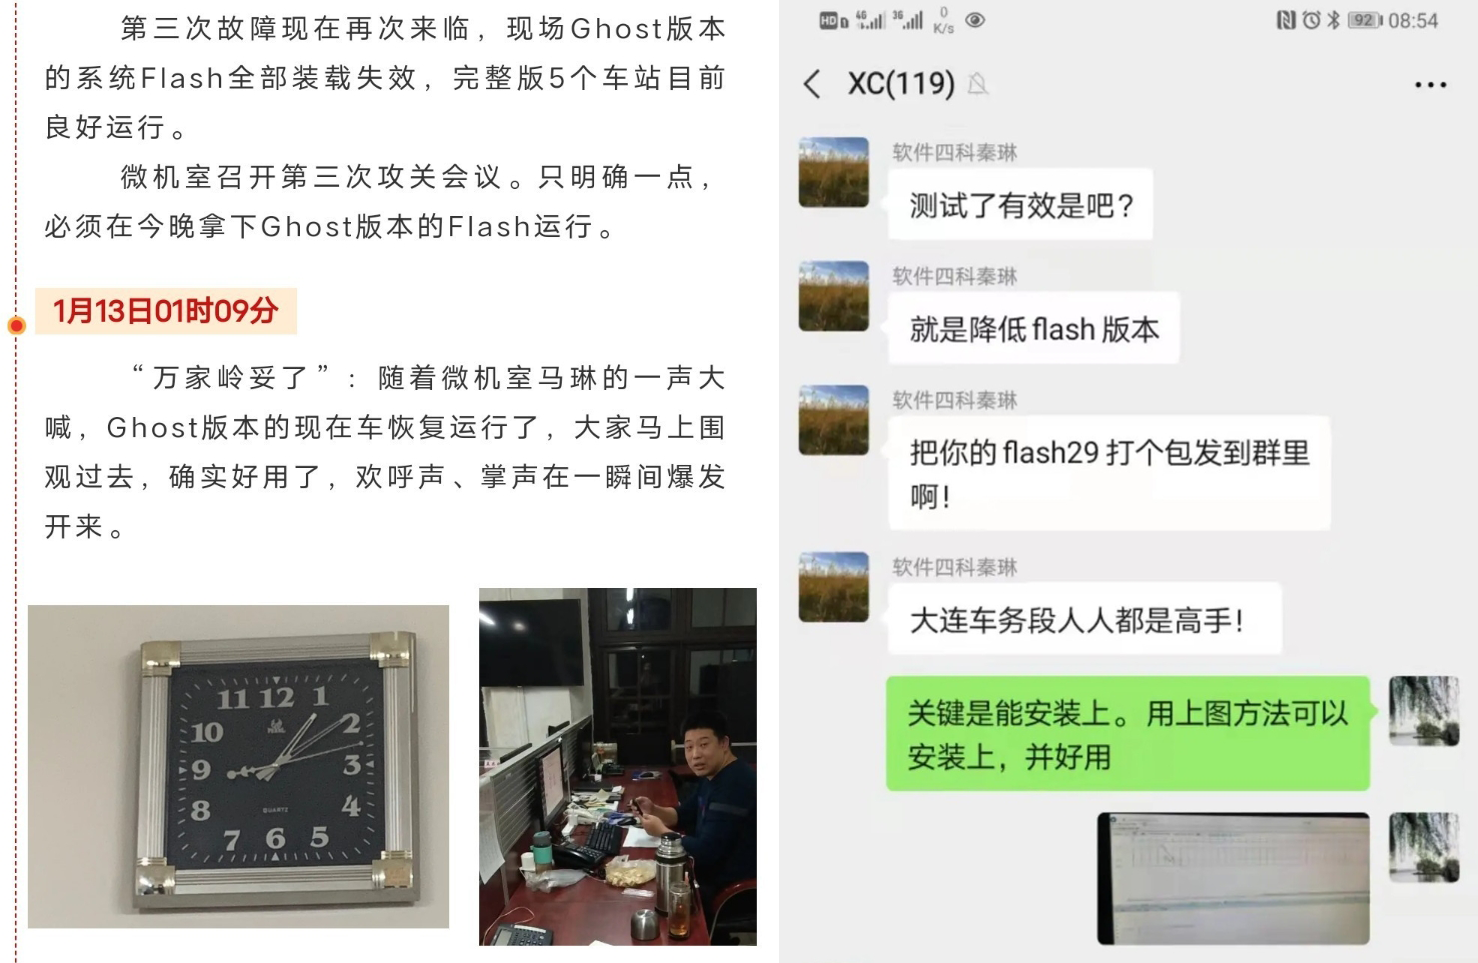 Adobe Flash bị khai tử làm mạng lưới đường sắt của cả một thành phố ở Trung Quốc phải dừng hoạt động - Ảnh 3.